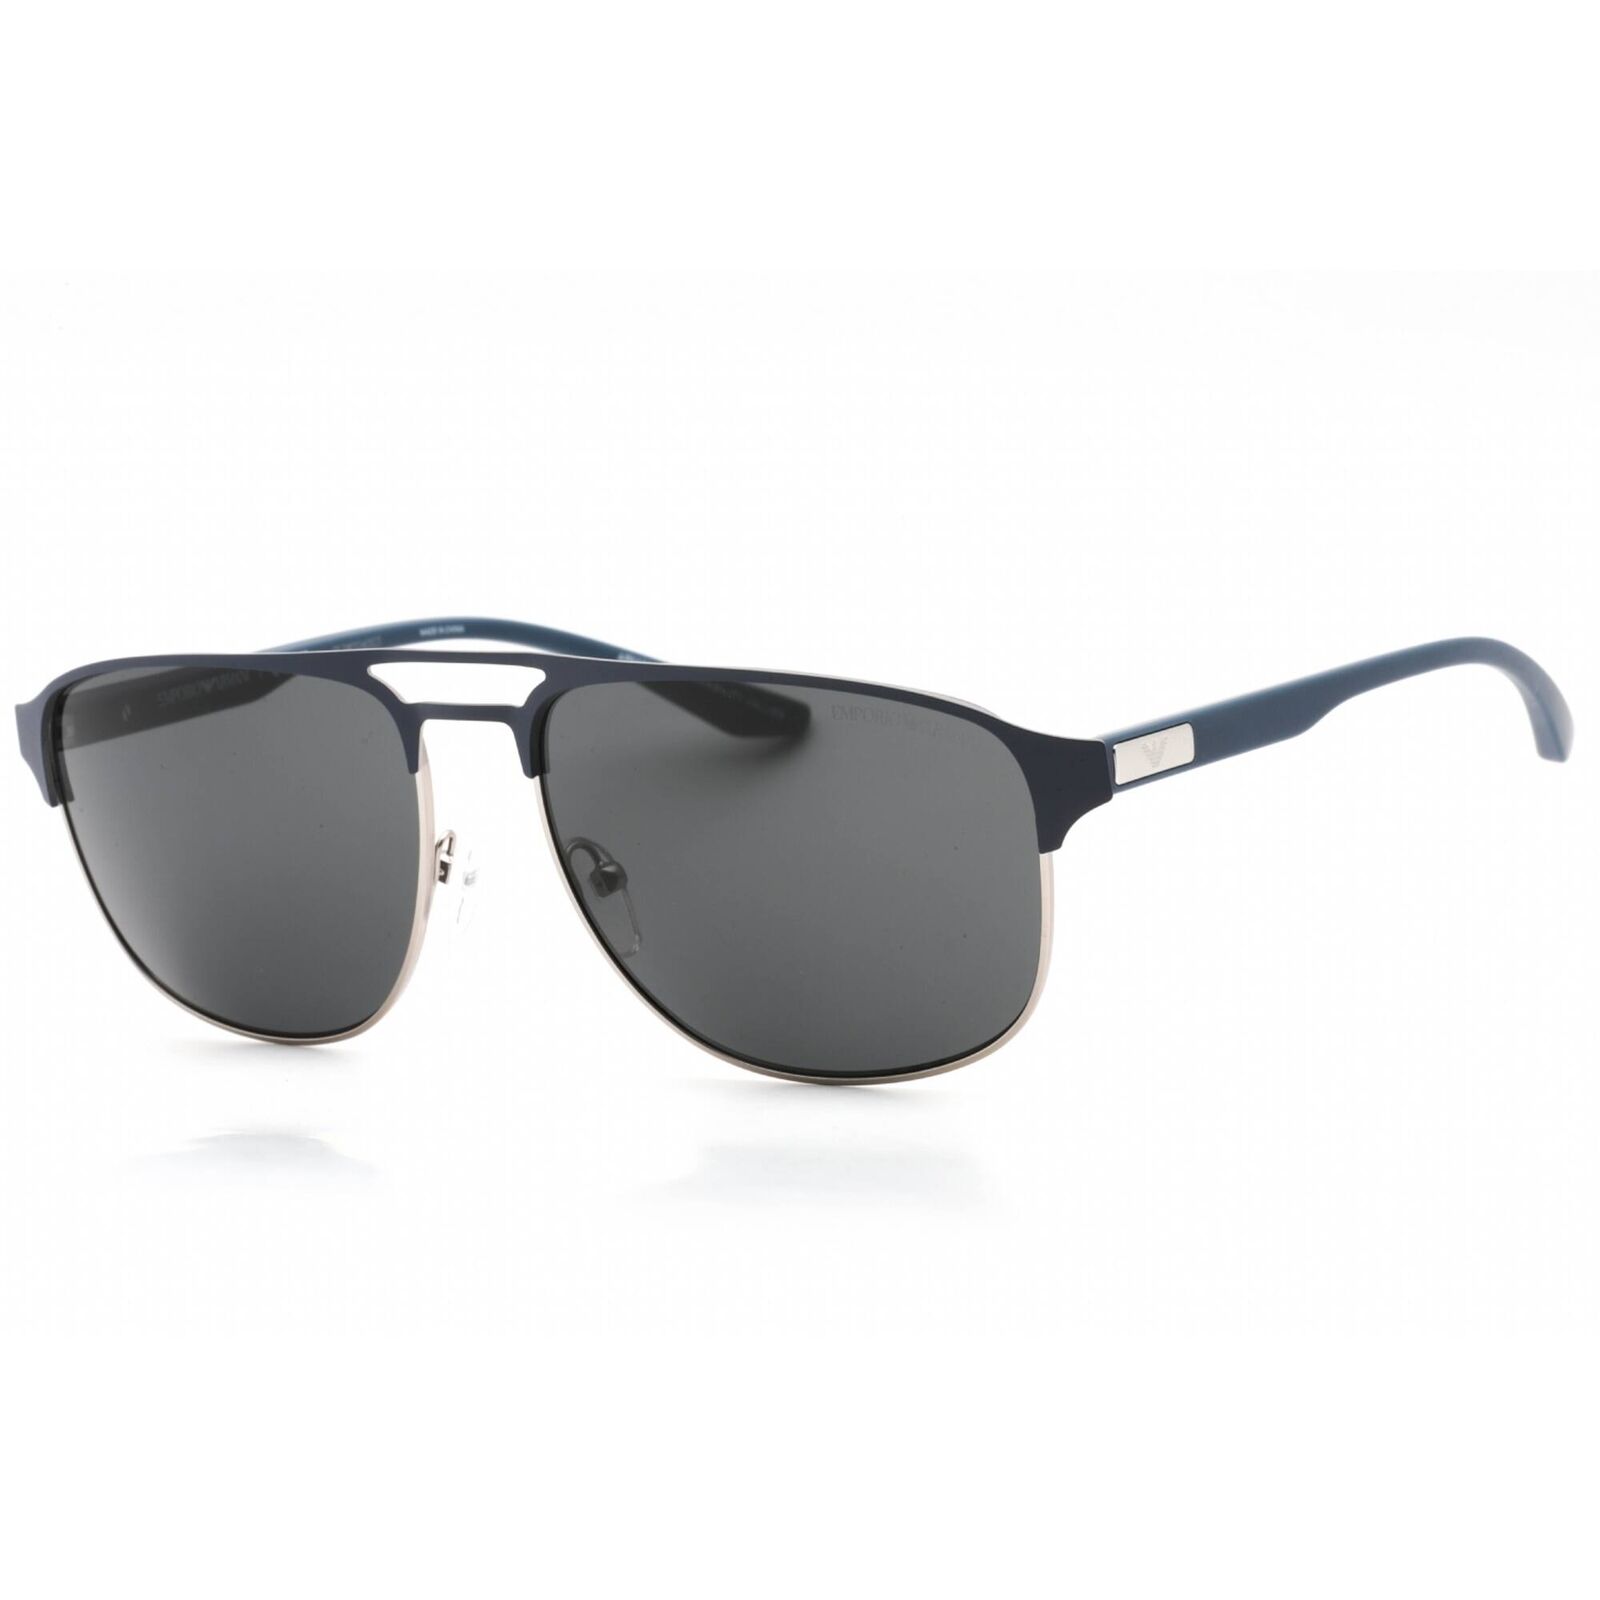 Emporio Armani Men's Sunglasses Blue On Matte Silver Metal Frame 0EA2144 336887 Emporio Armani 0EA2144 336887